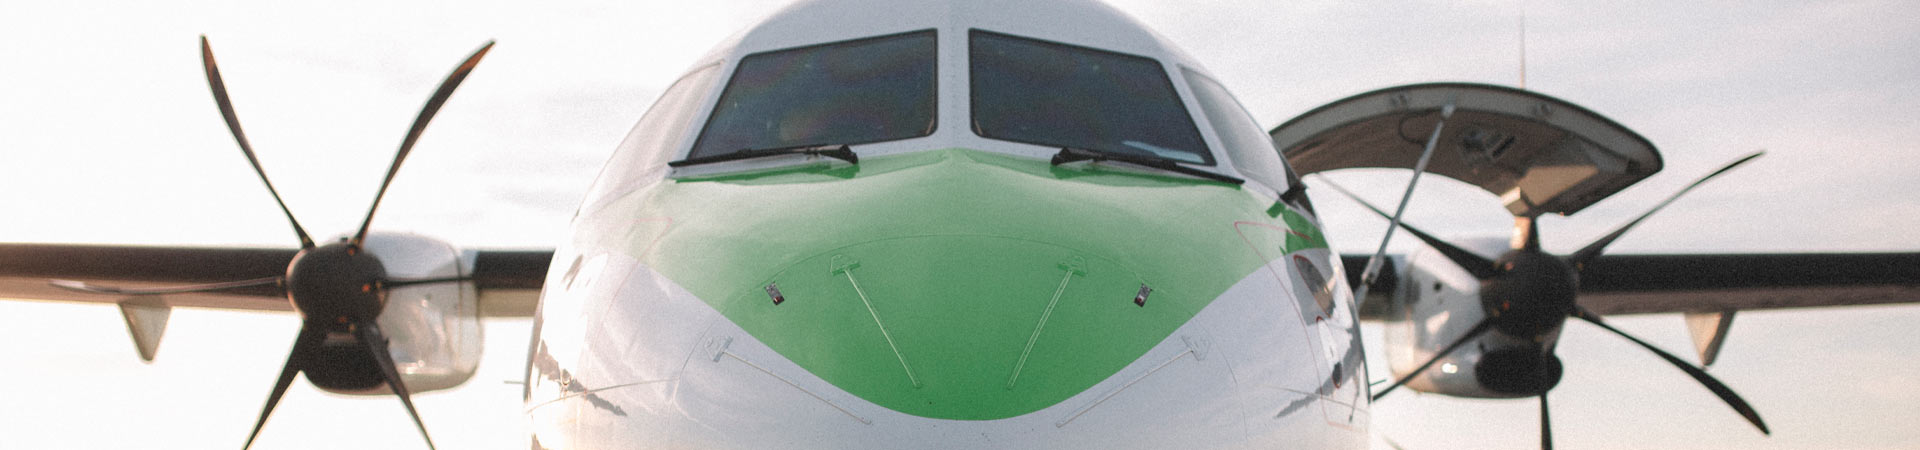 Nose of a Binter ATR aircraft